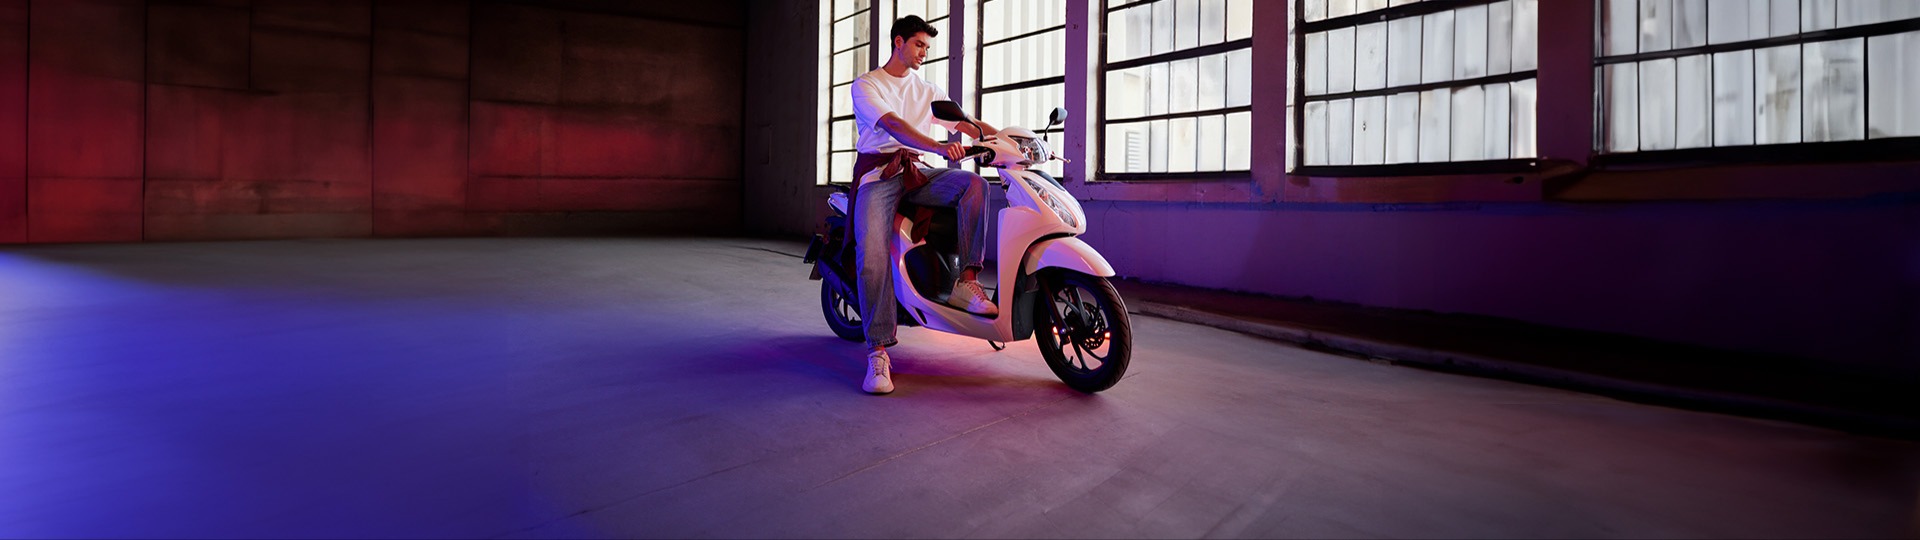  Pazarbaşı Motor 40.000 TL’ye vade farksız 12 ay taksitle sizin de ilk motosikletiniz Honda Dio olsun.